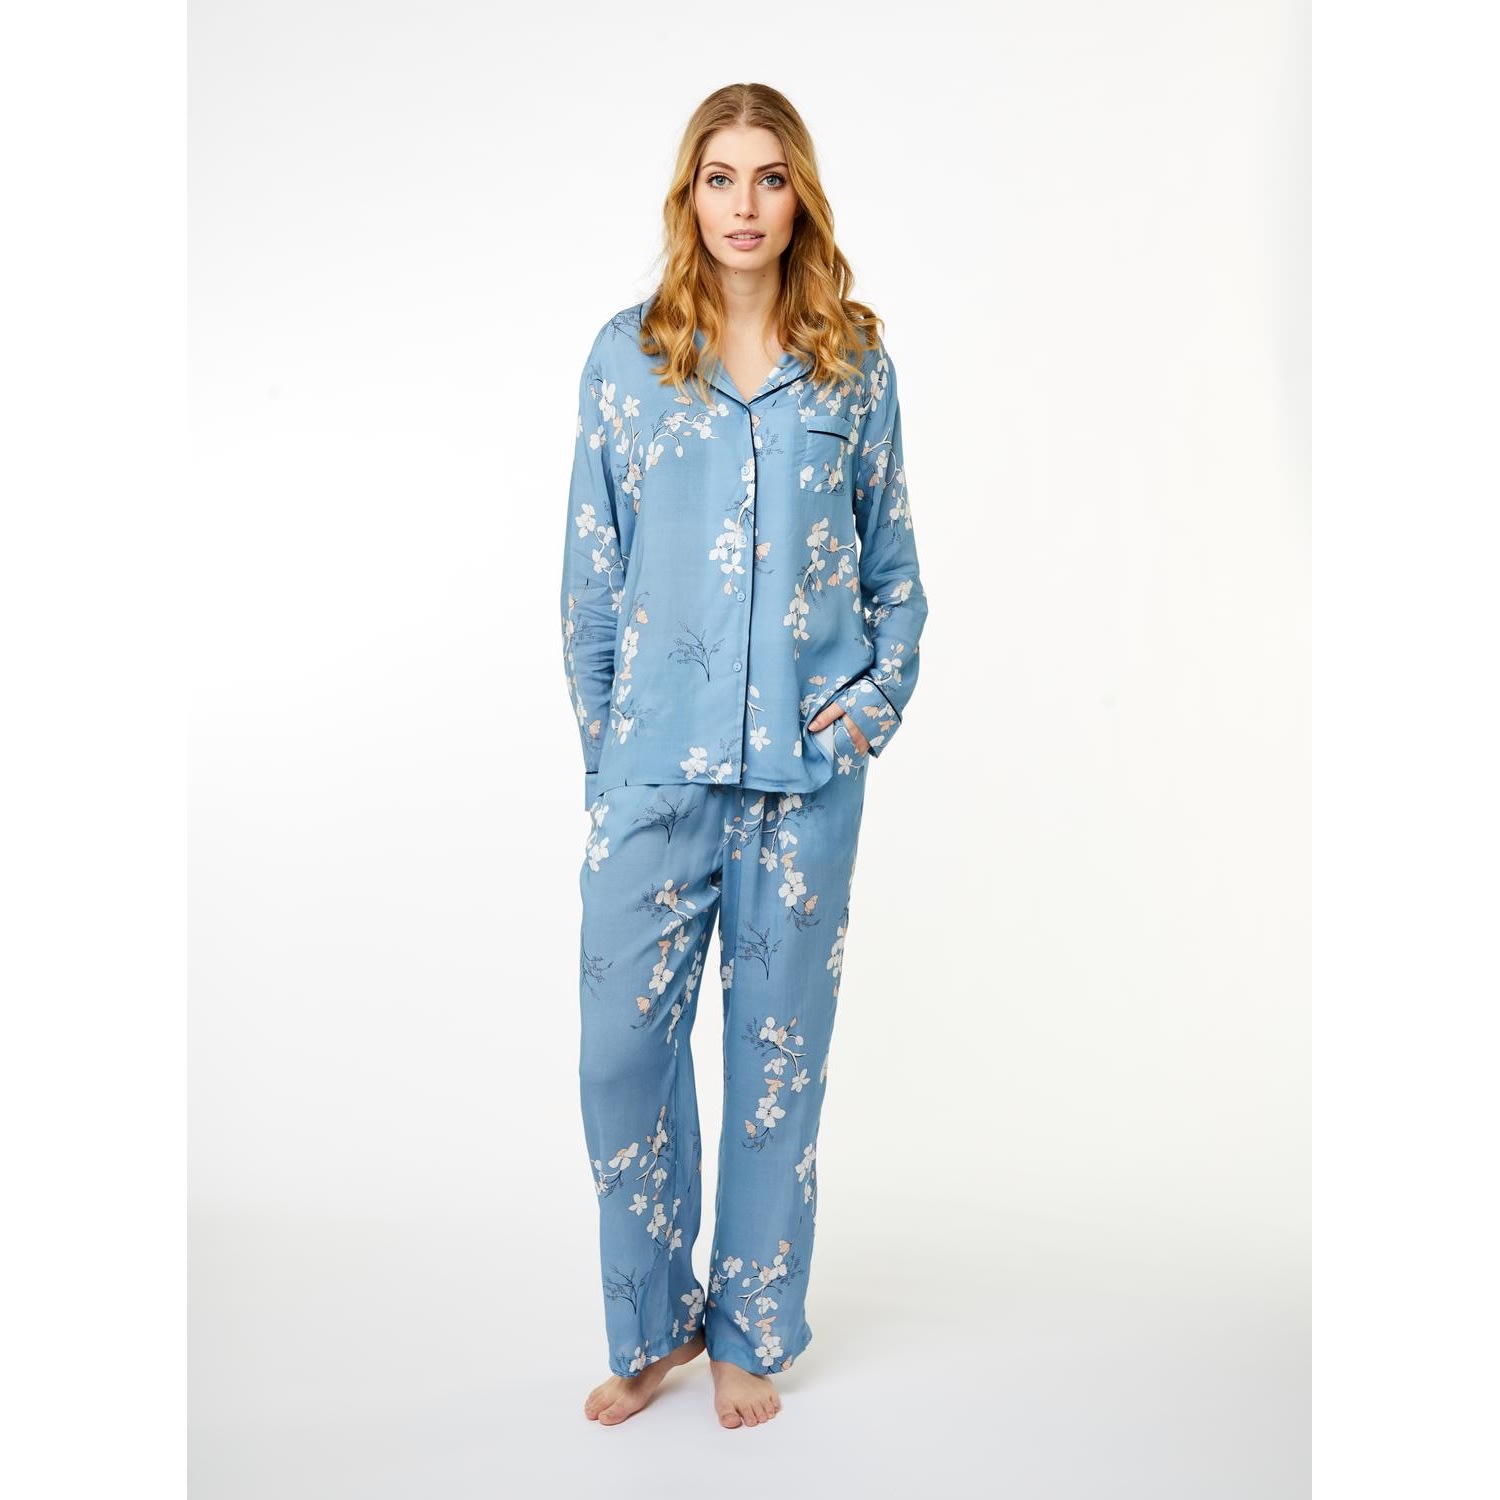 Josephine Pajamas Shirt, blue shadow